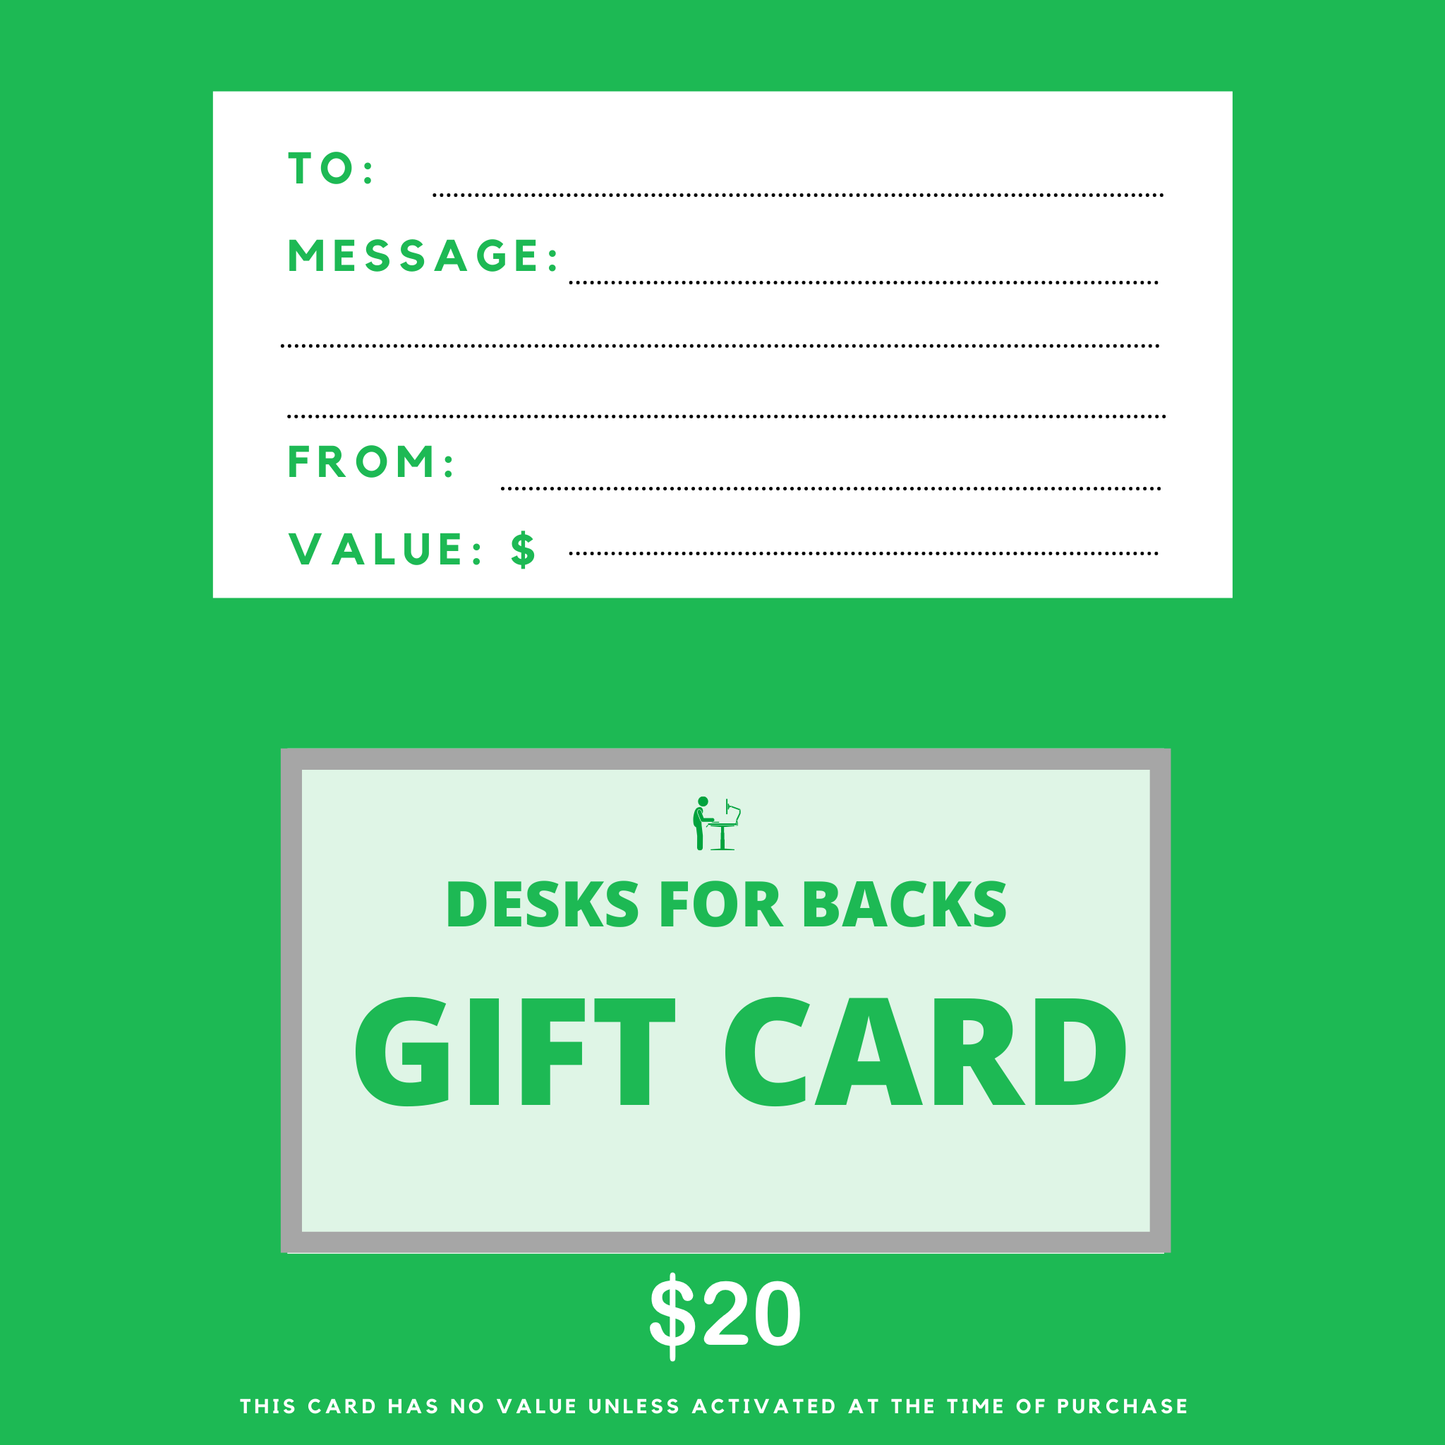 Desks for backs gift card $20